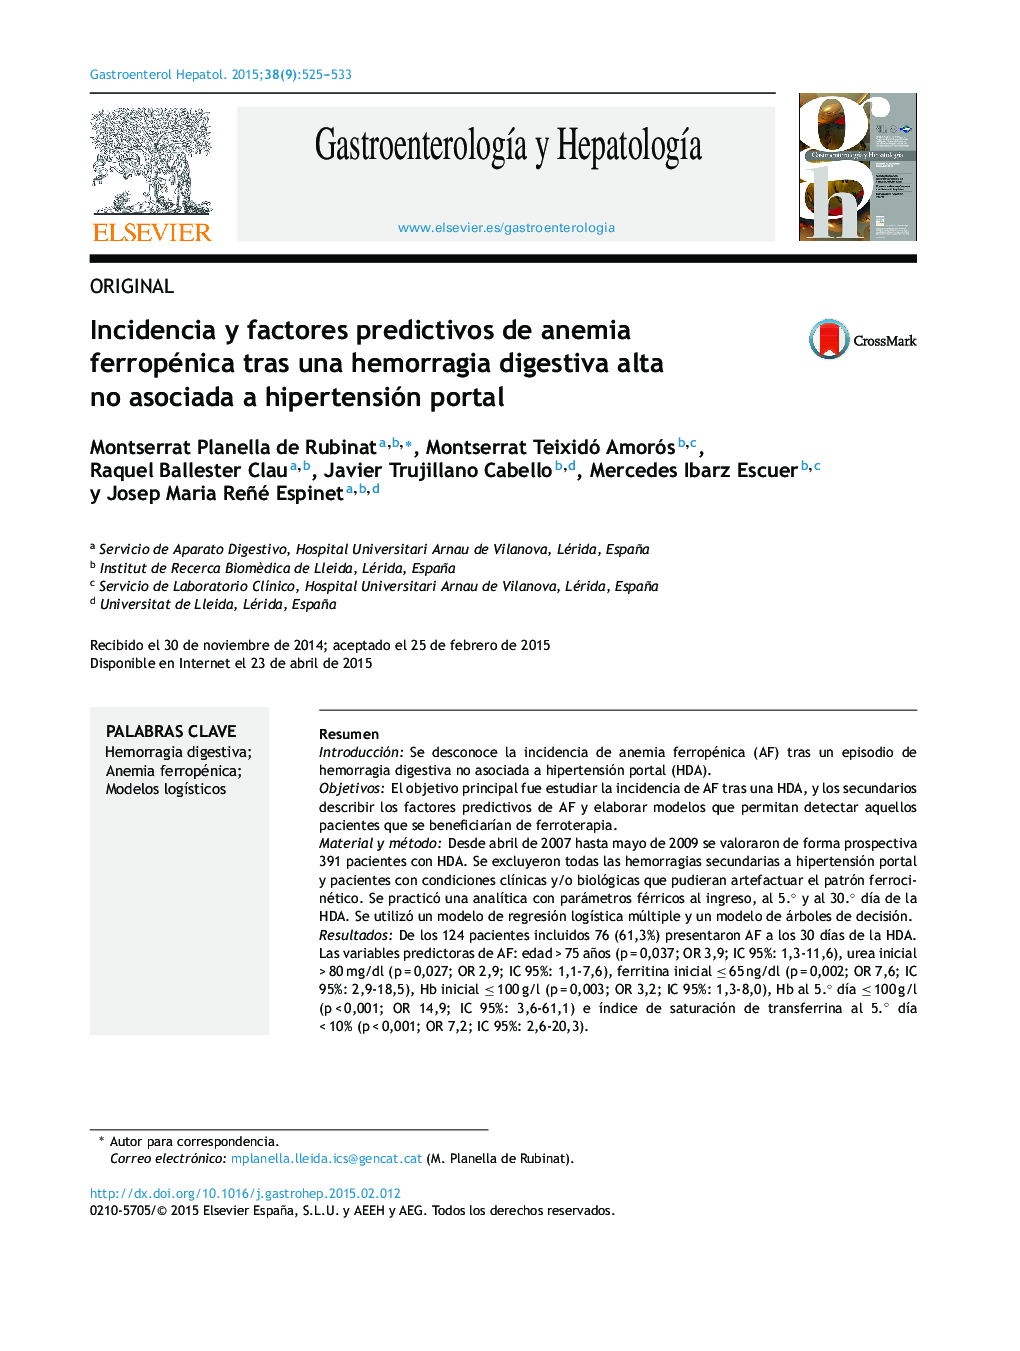 Incidencia y factores predictivos de anemia ferropénica tras una hemorragia digestiva alta no asociada a hipertensión portal